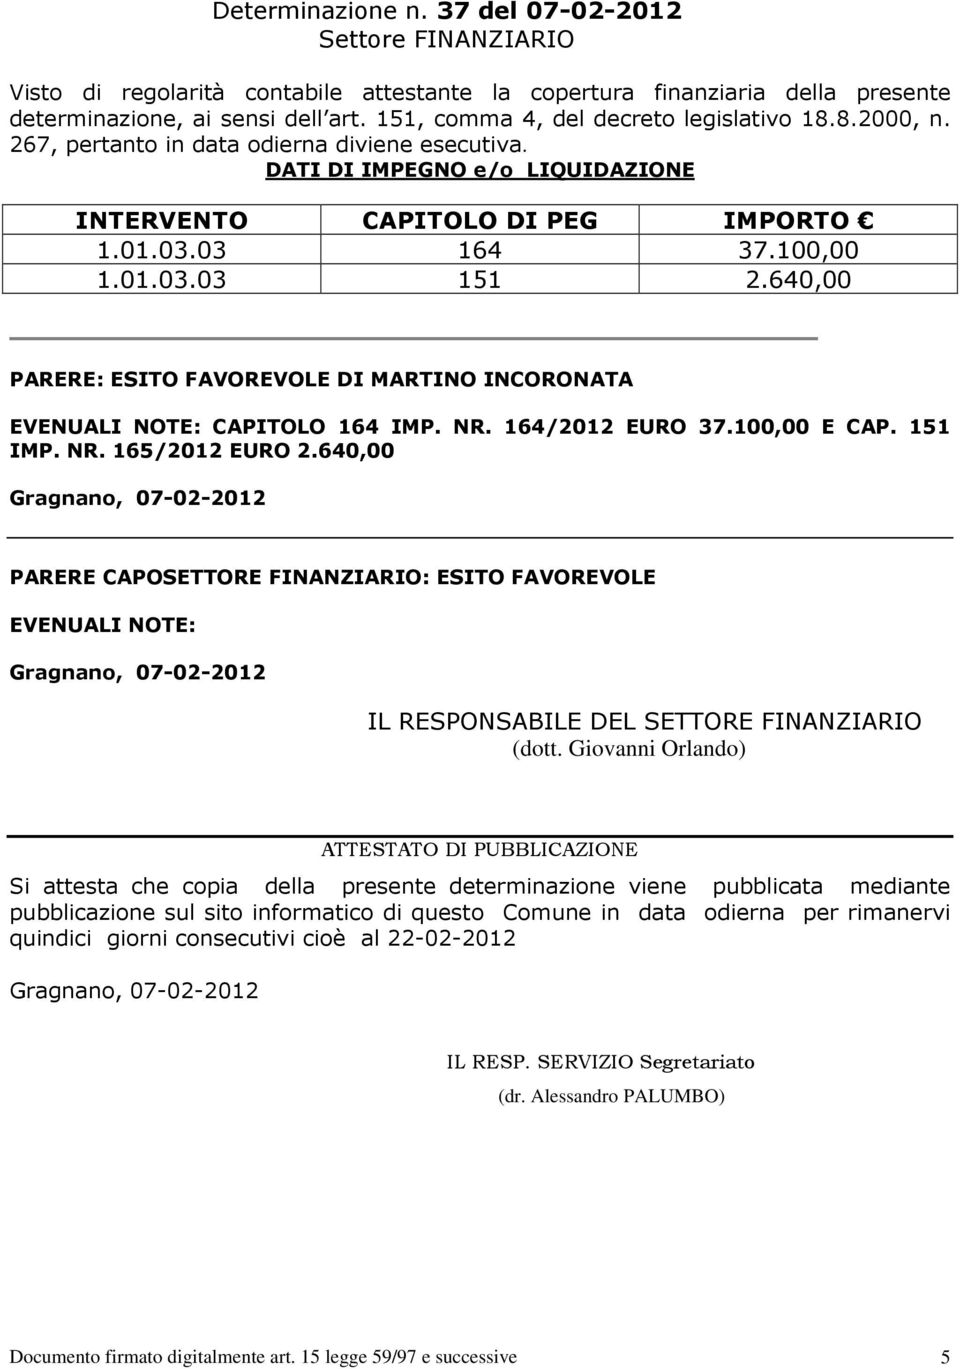 640,00 PARERE: ESITO FAVOREVOLE DI MARTINO INCORONATA EVENUALI NOTE: CAPITOLO 164 IMP. NR. 164/2012 EURO 37.100,00 E CAP. 151 IMP. NR. 165/2012 EURO 2.